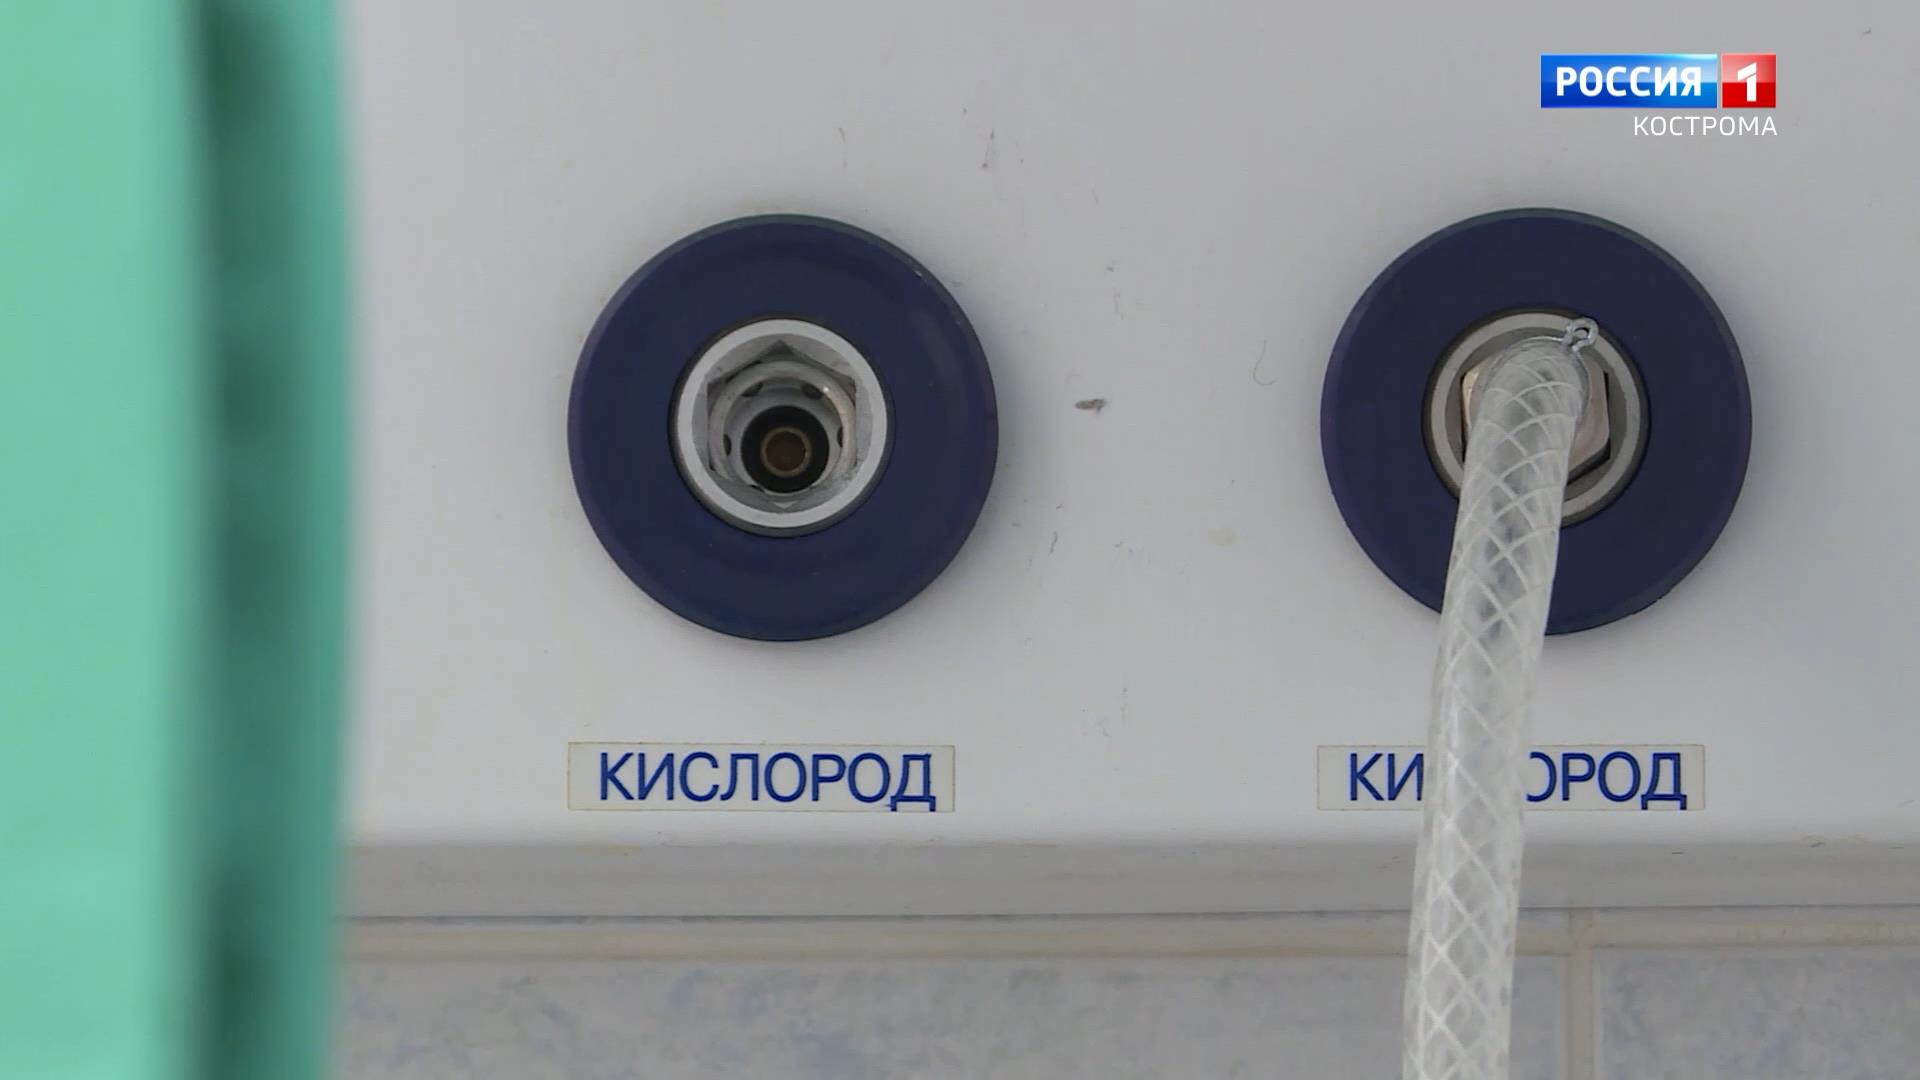 Кислородную станцию создадут в Городской больнице Костромы